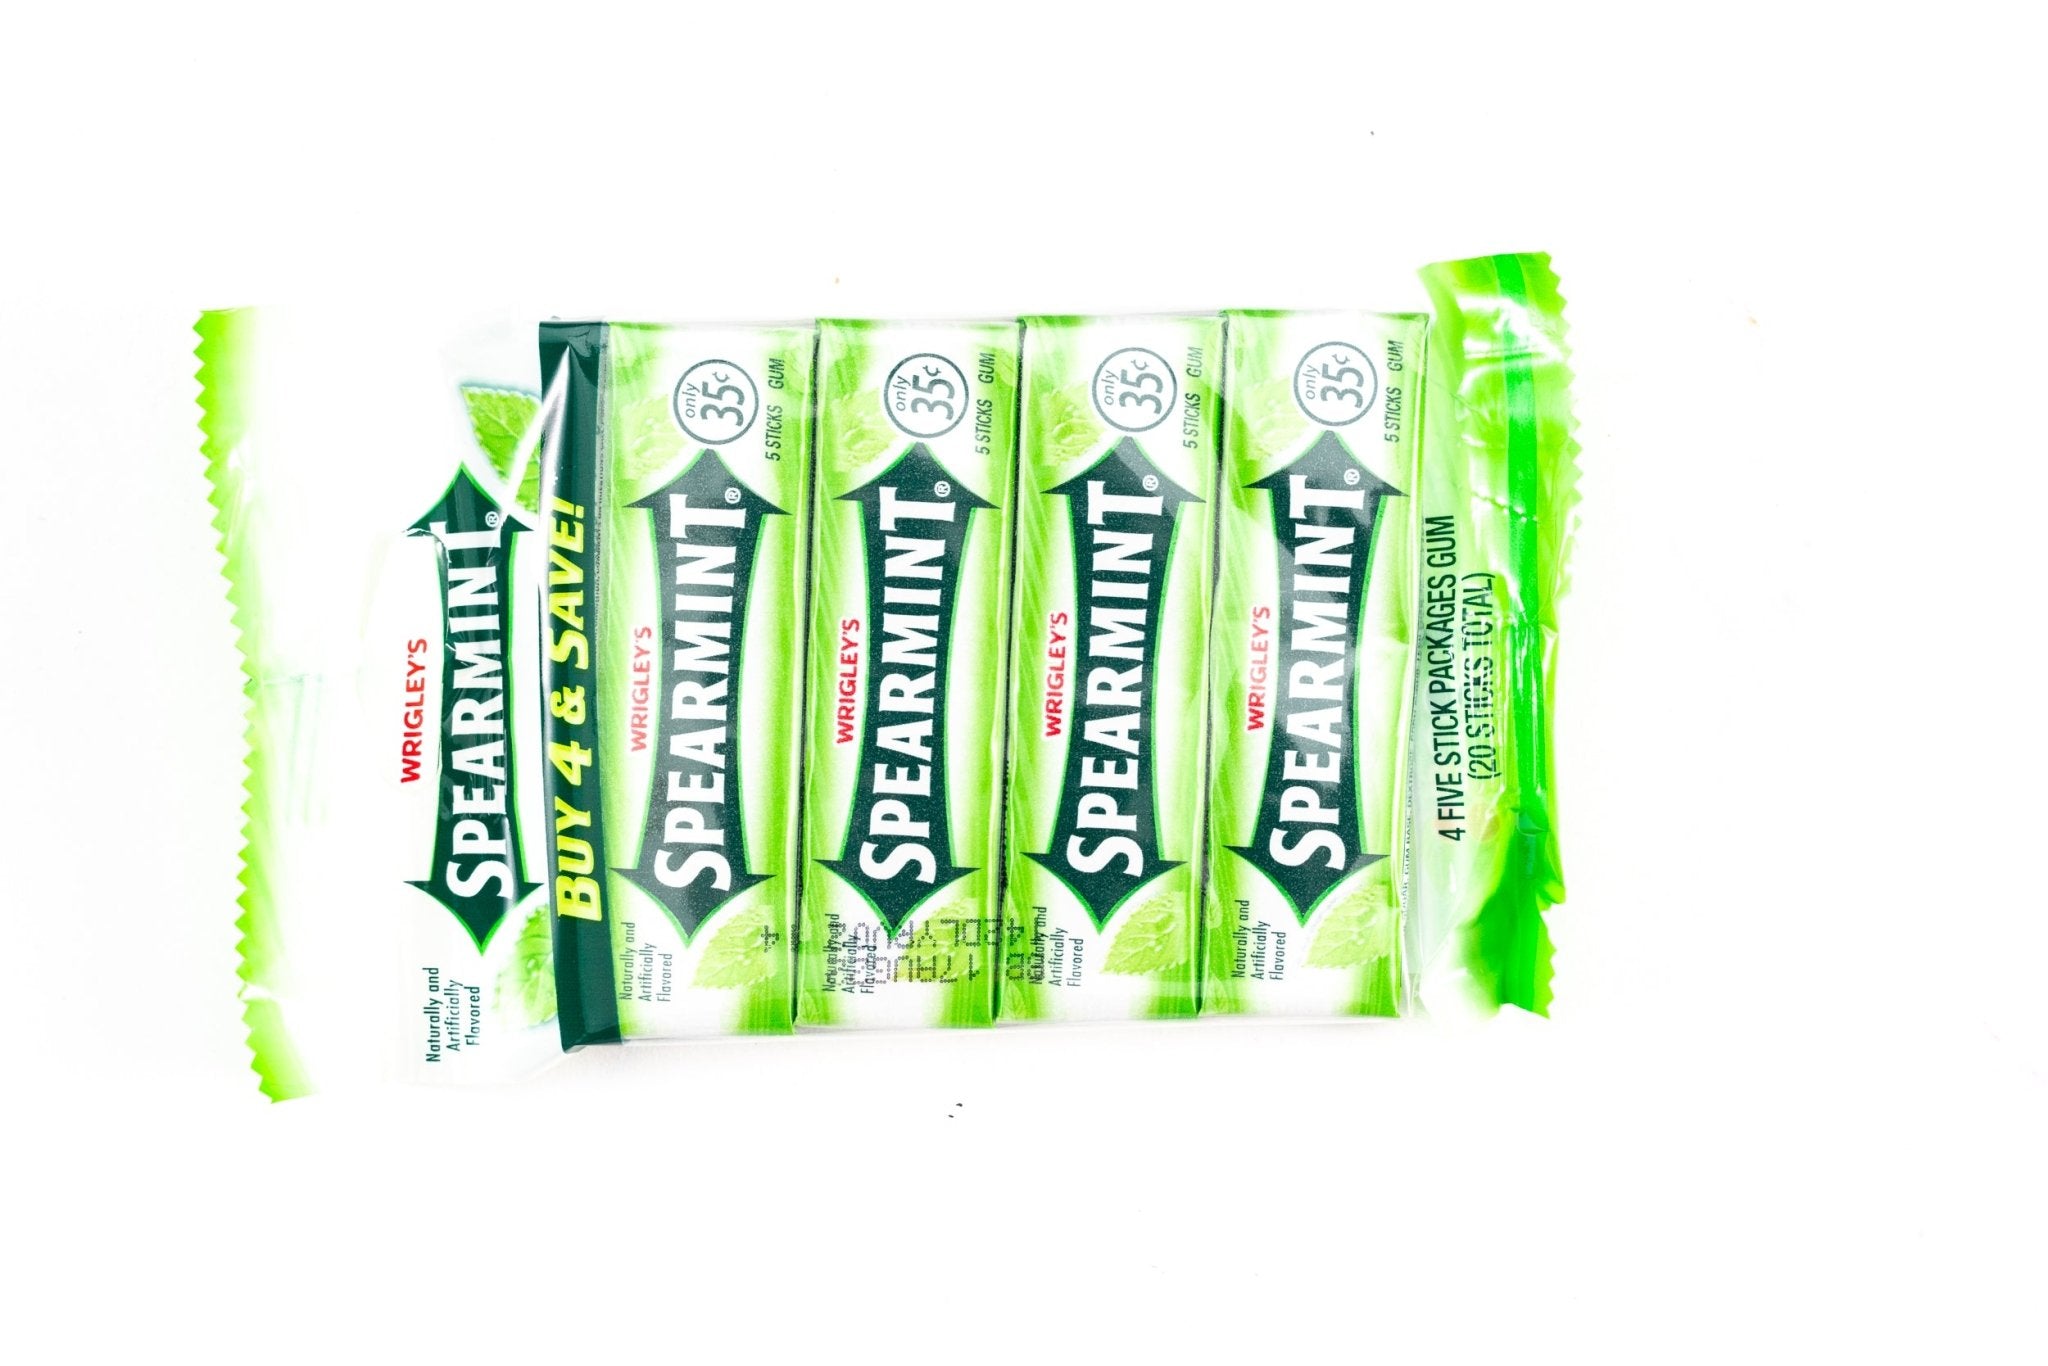 Wrigley's Spearmint Gum - Classic Flavor - Bulk Box (1.764 oz, 10 ct.) - Vintage Candy Co.